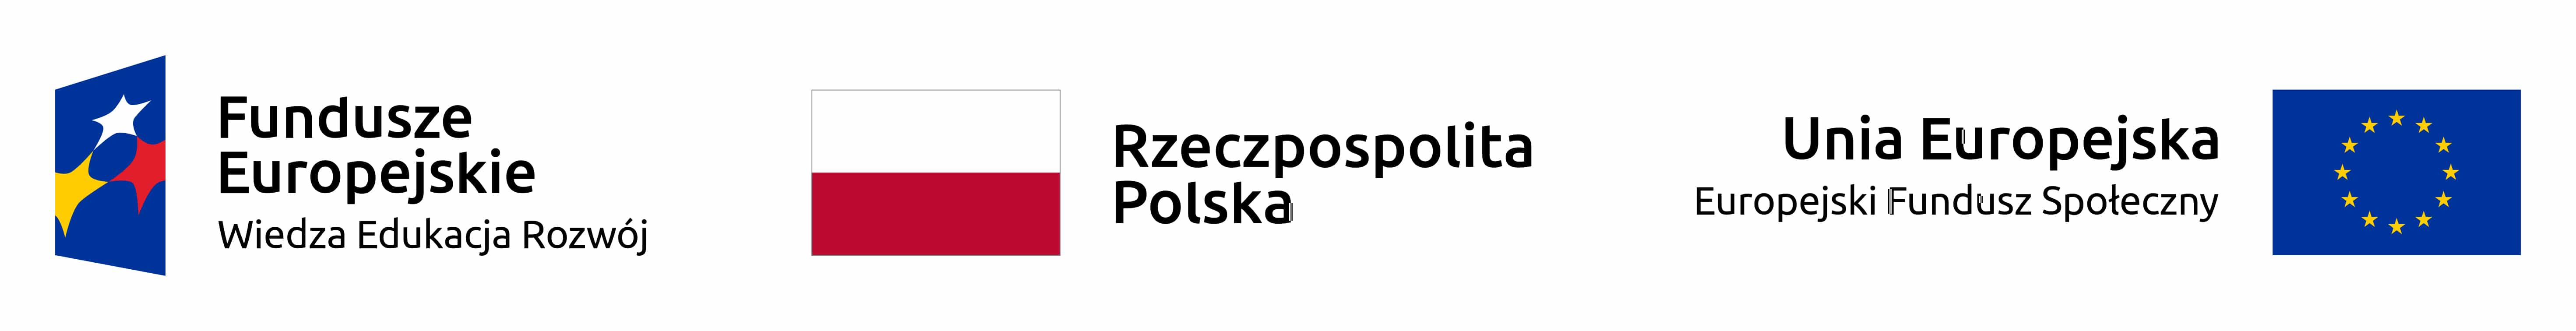 Logotypy Unii Europejskiej i flaga Polski